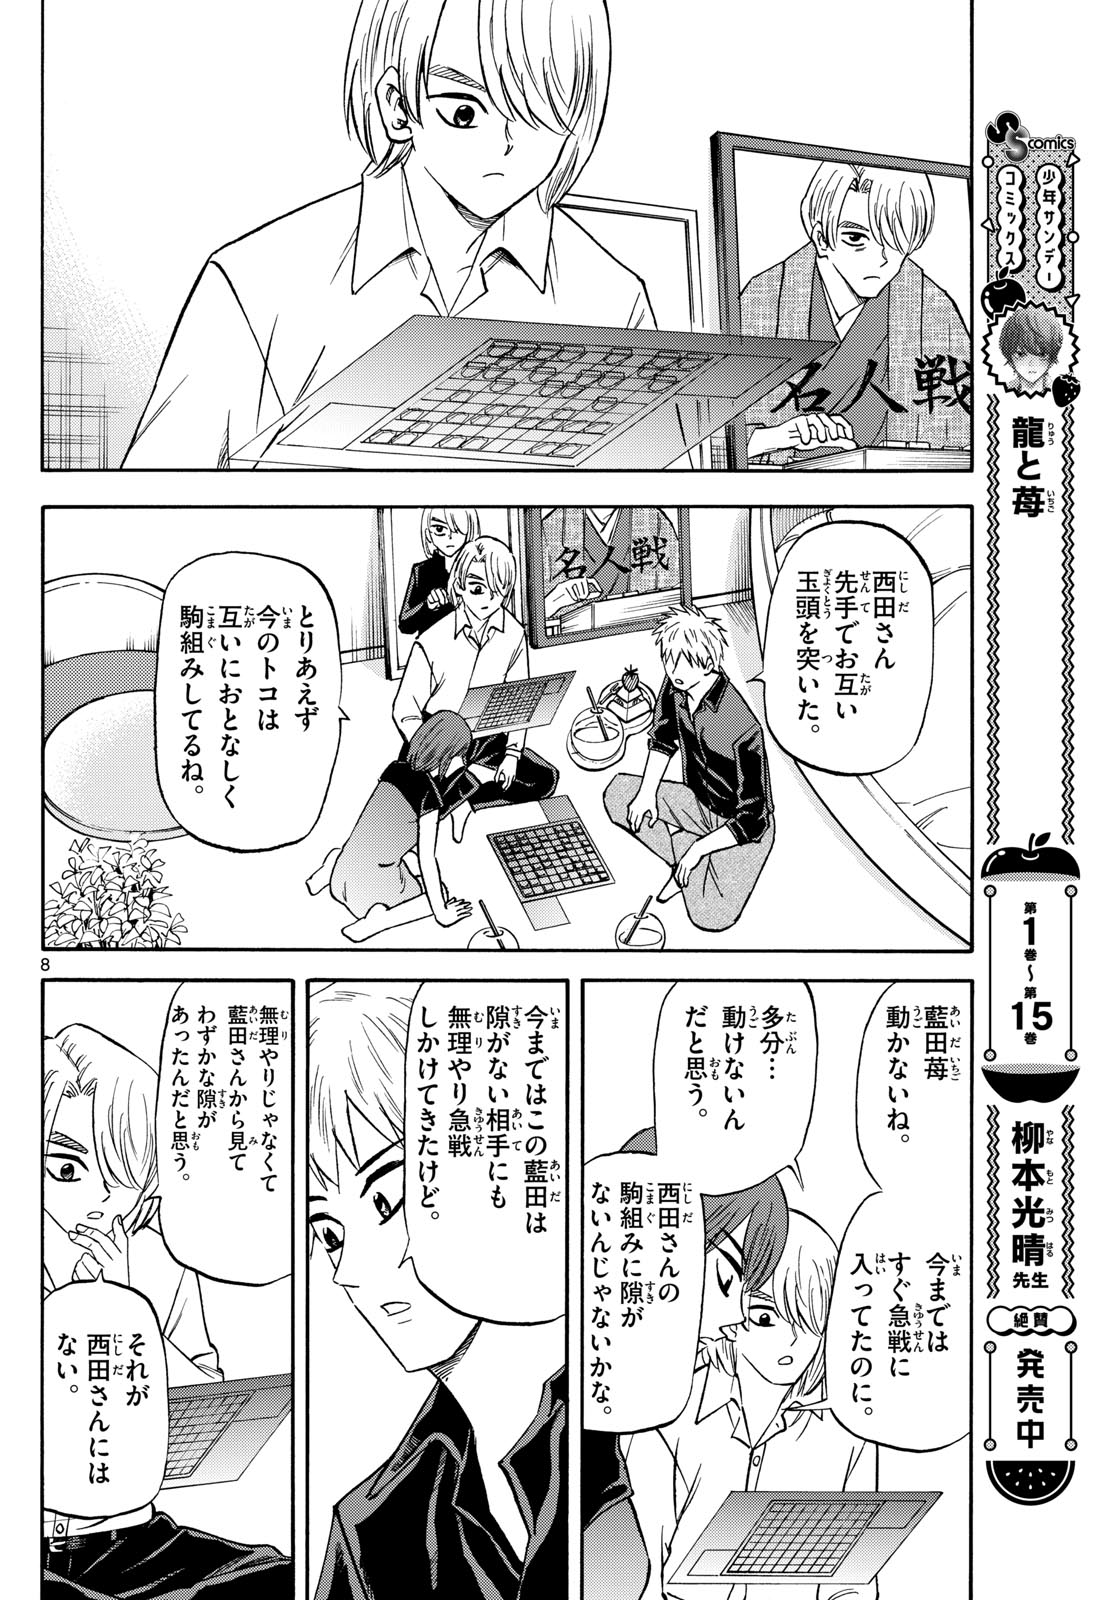 Tatsu to Ichigo - Chapter 193 - Page 8